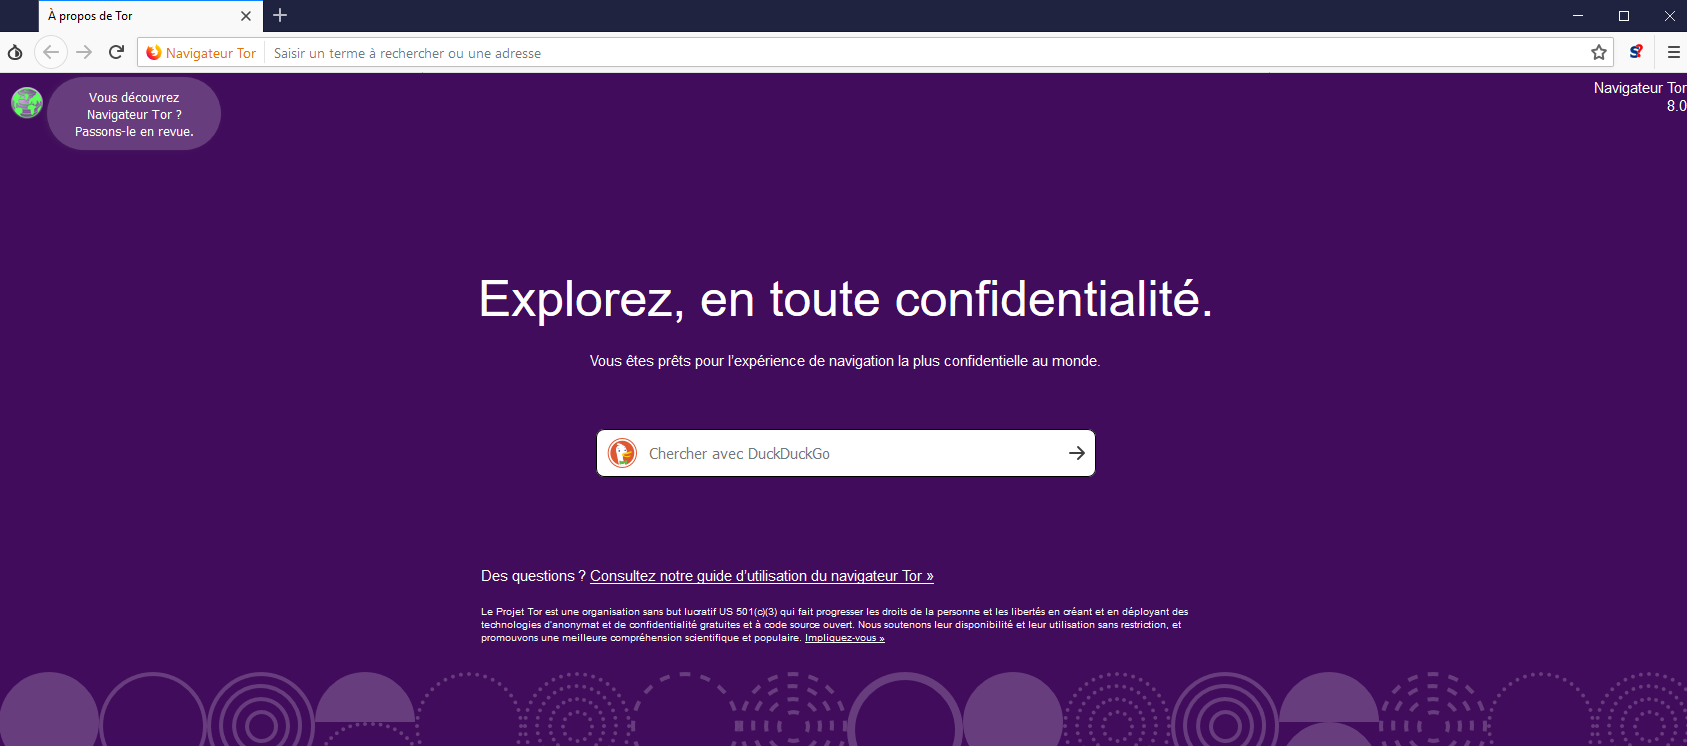 Tor browser videos mega кали линукс установить тор браузер мега